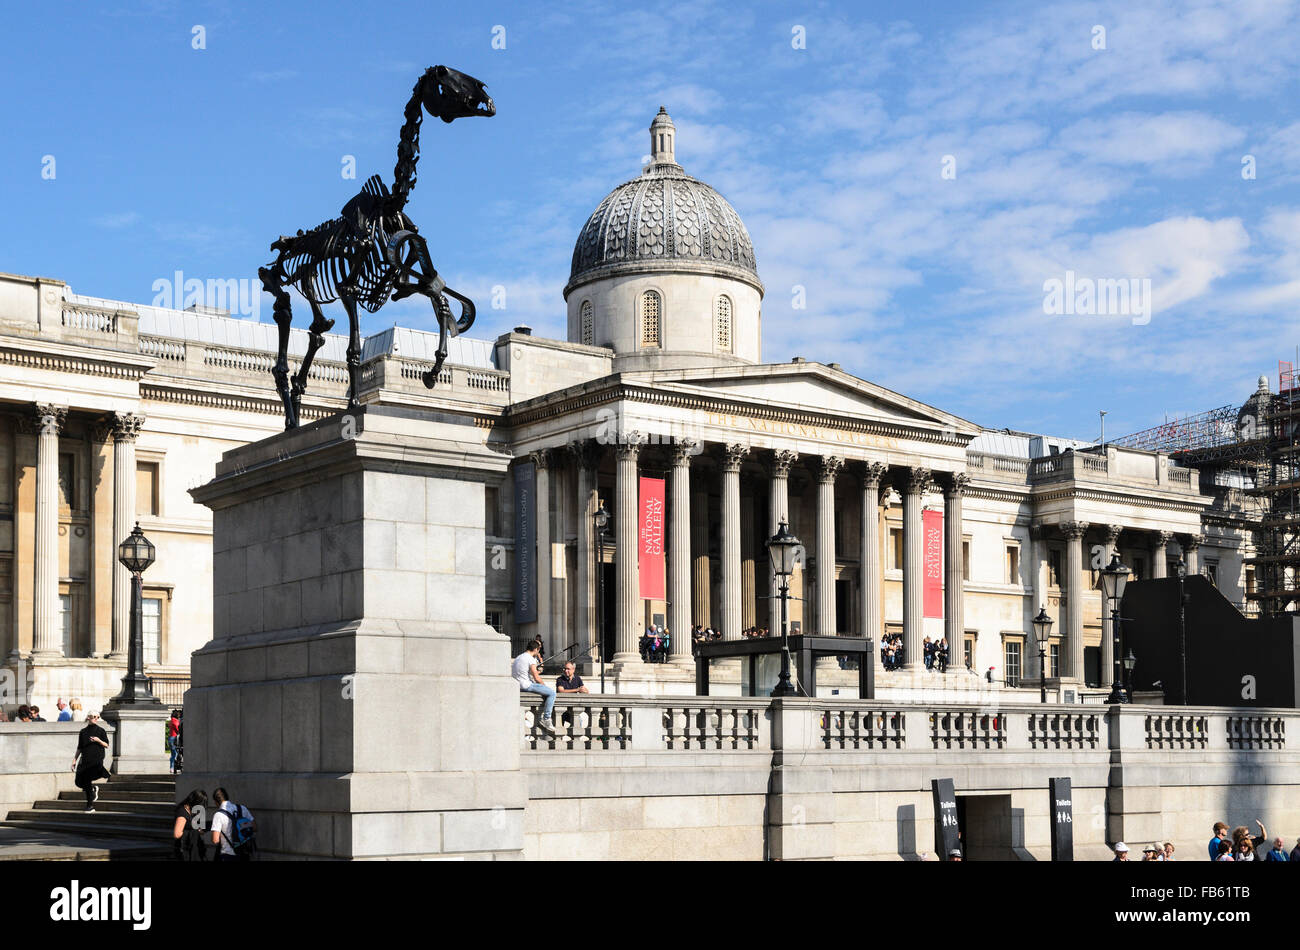 Ein Stück der Skulptur von Hans Haacke geschenkten Gaul beruht auf der Fourth Plinth, Trafalgar Square, London, Vereinigtes Königreich Stockfoto